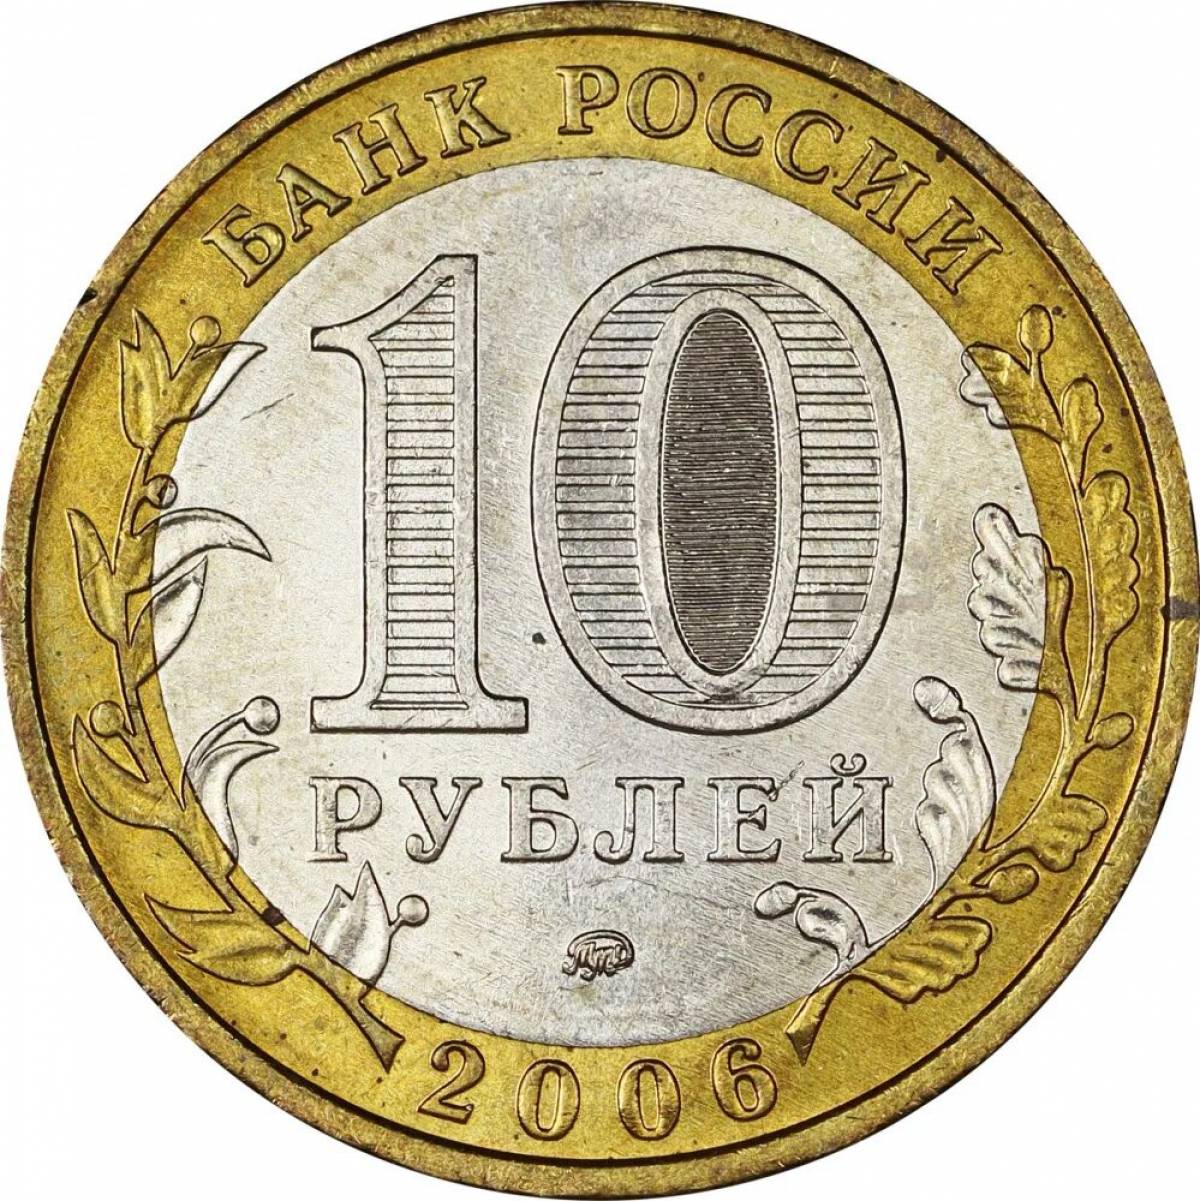 10 рублей для детей #10